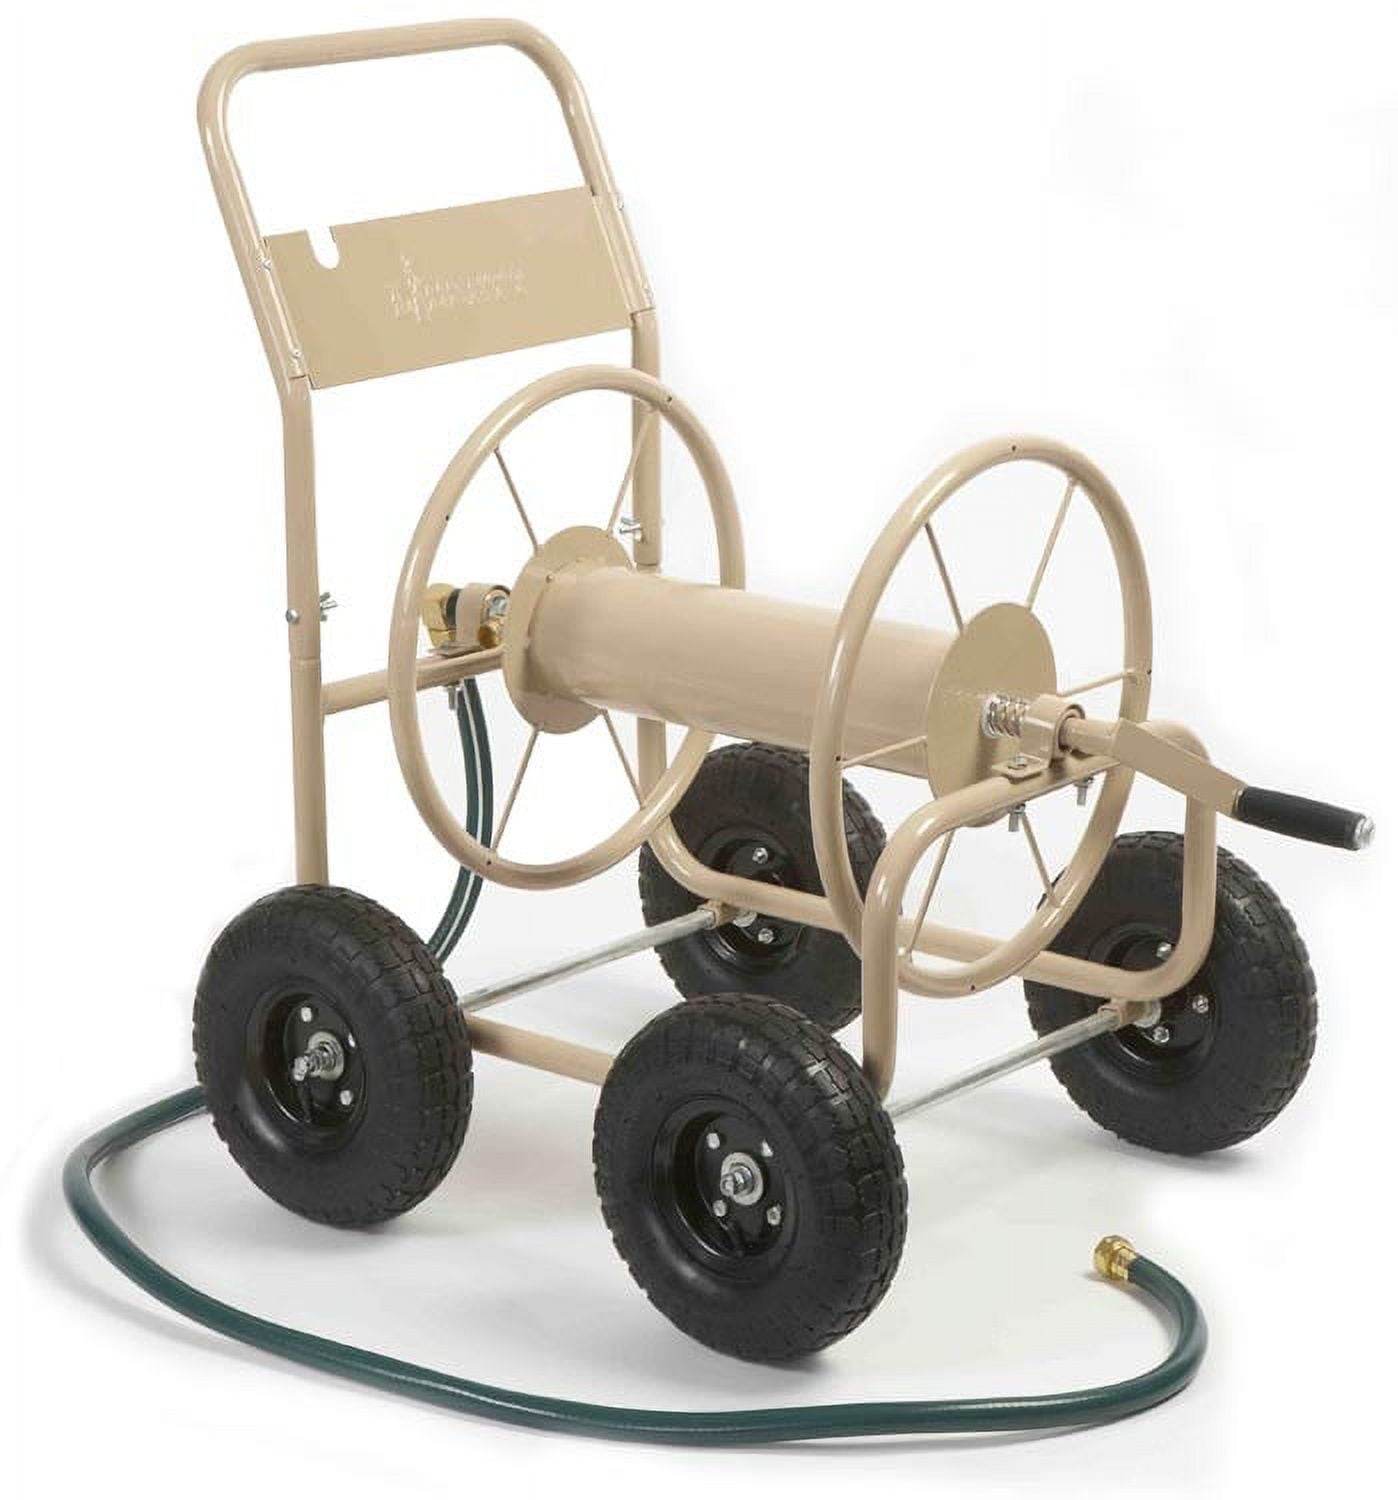 Liberty Garden 300' Industrial Hose Reel Cart